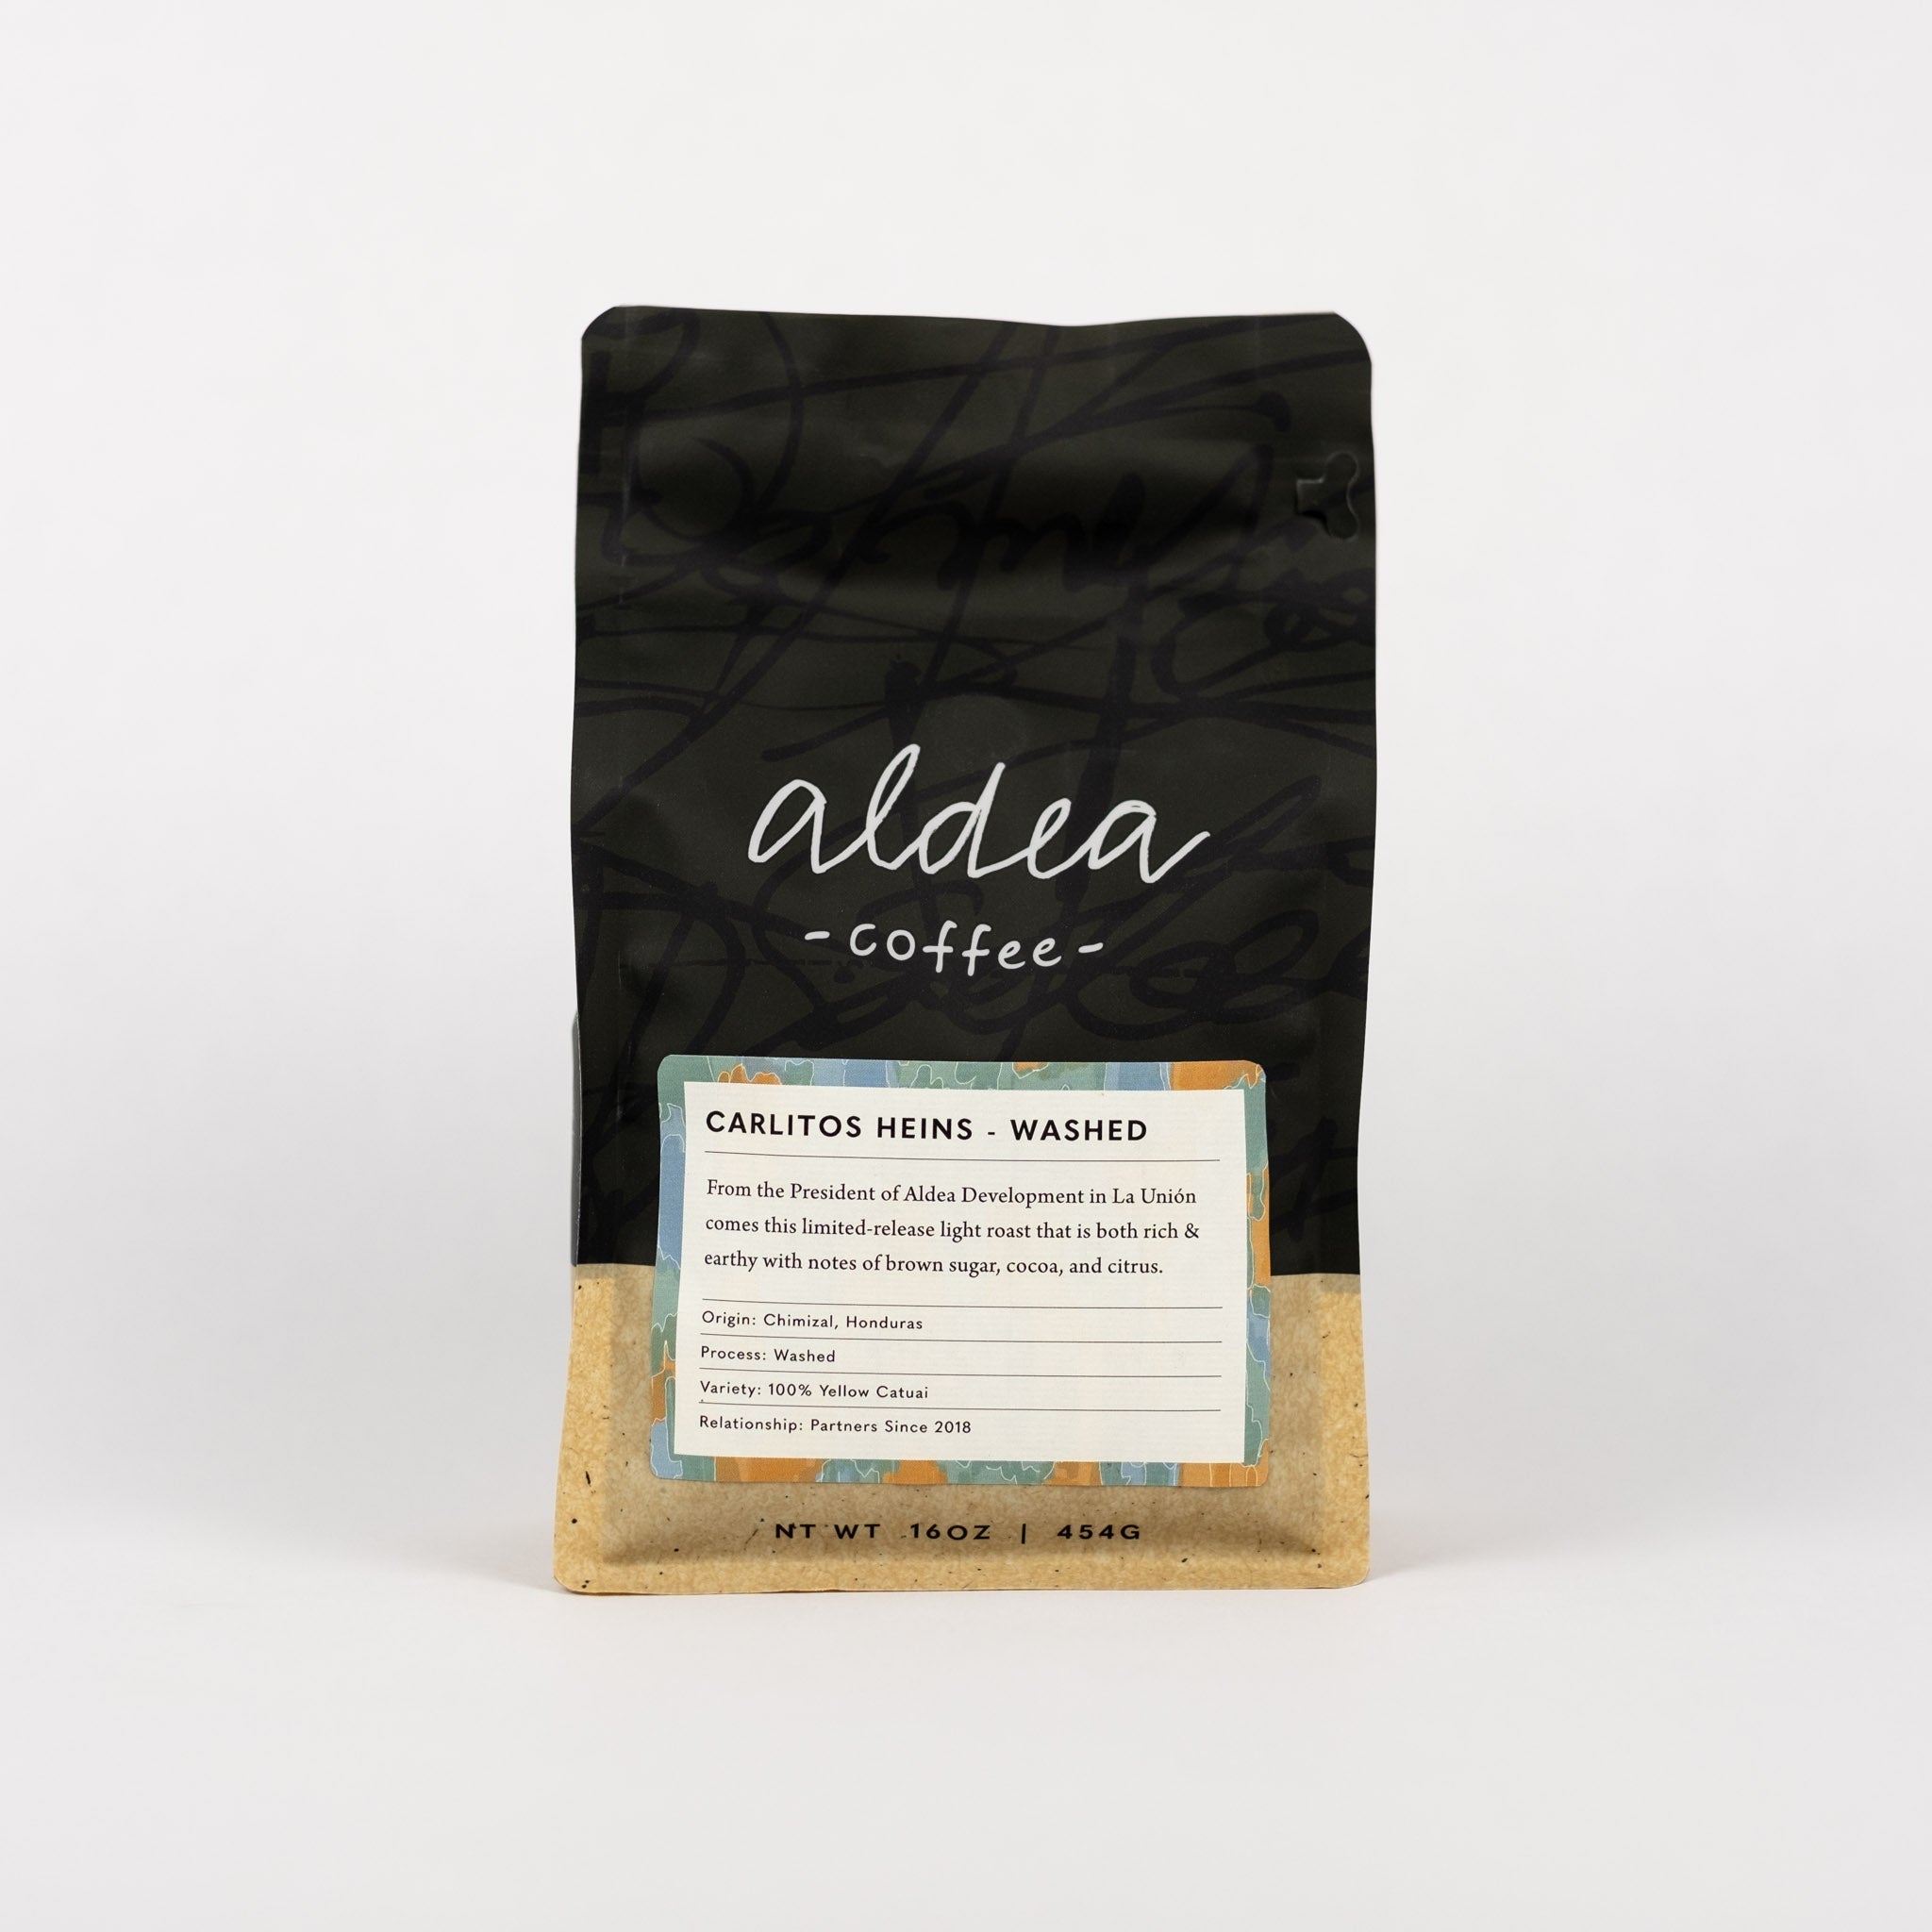 Carlitos Heins - Washed Process - Aldea Coffee